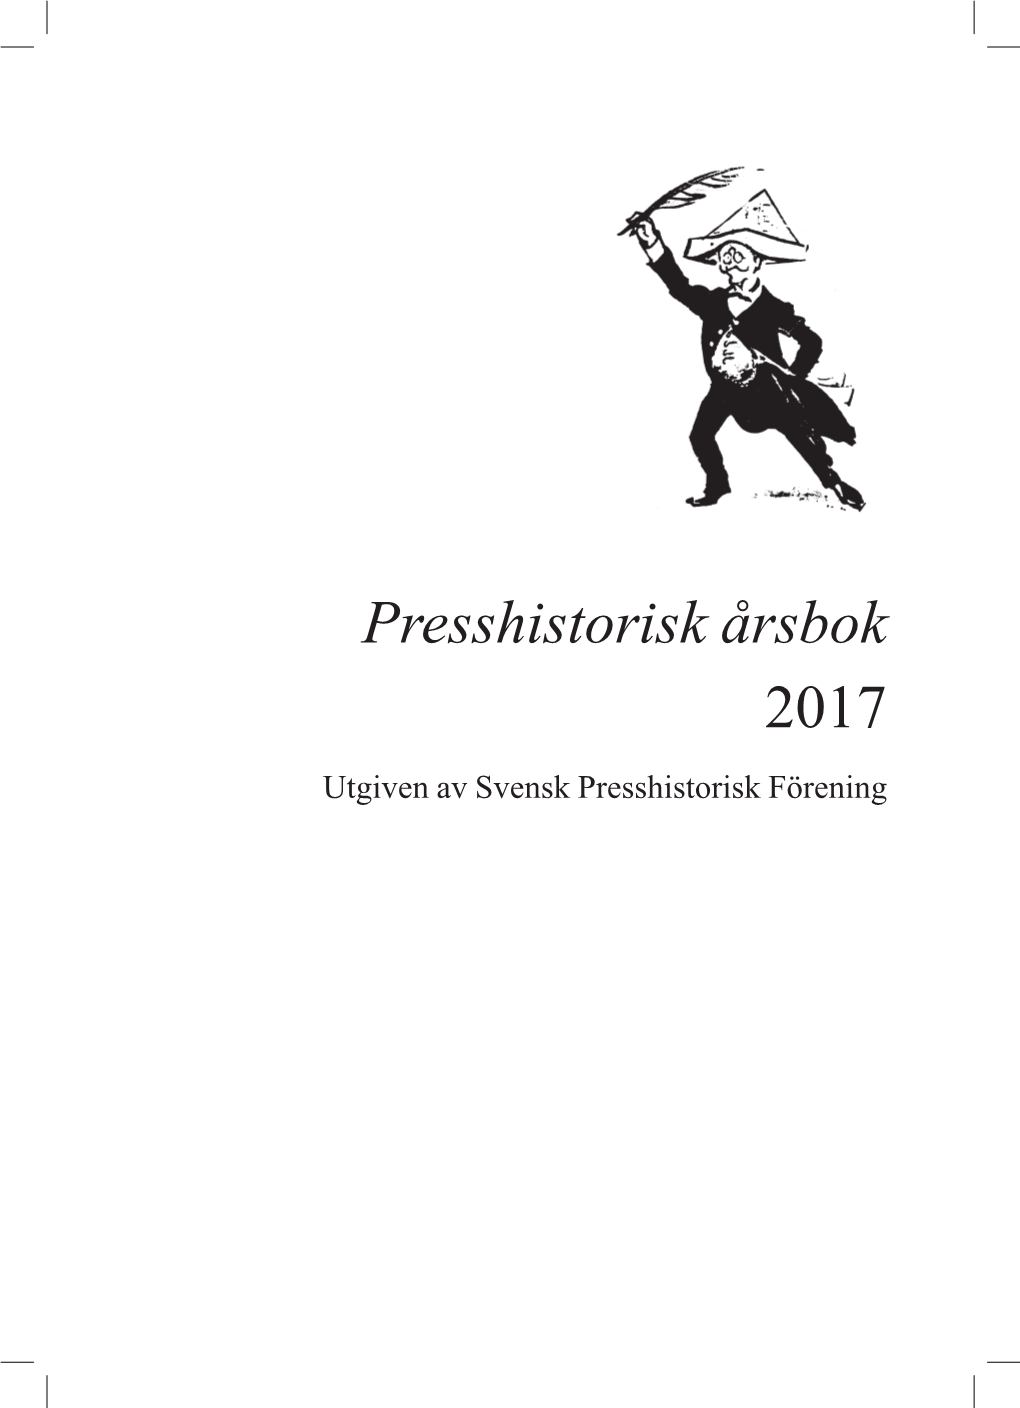 Ladda Ned Presshistorisk Årsbok 2017